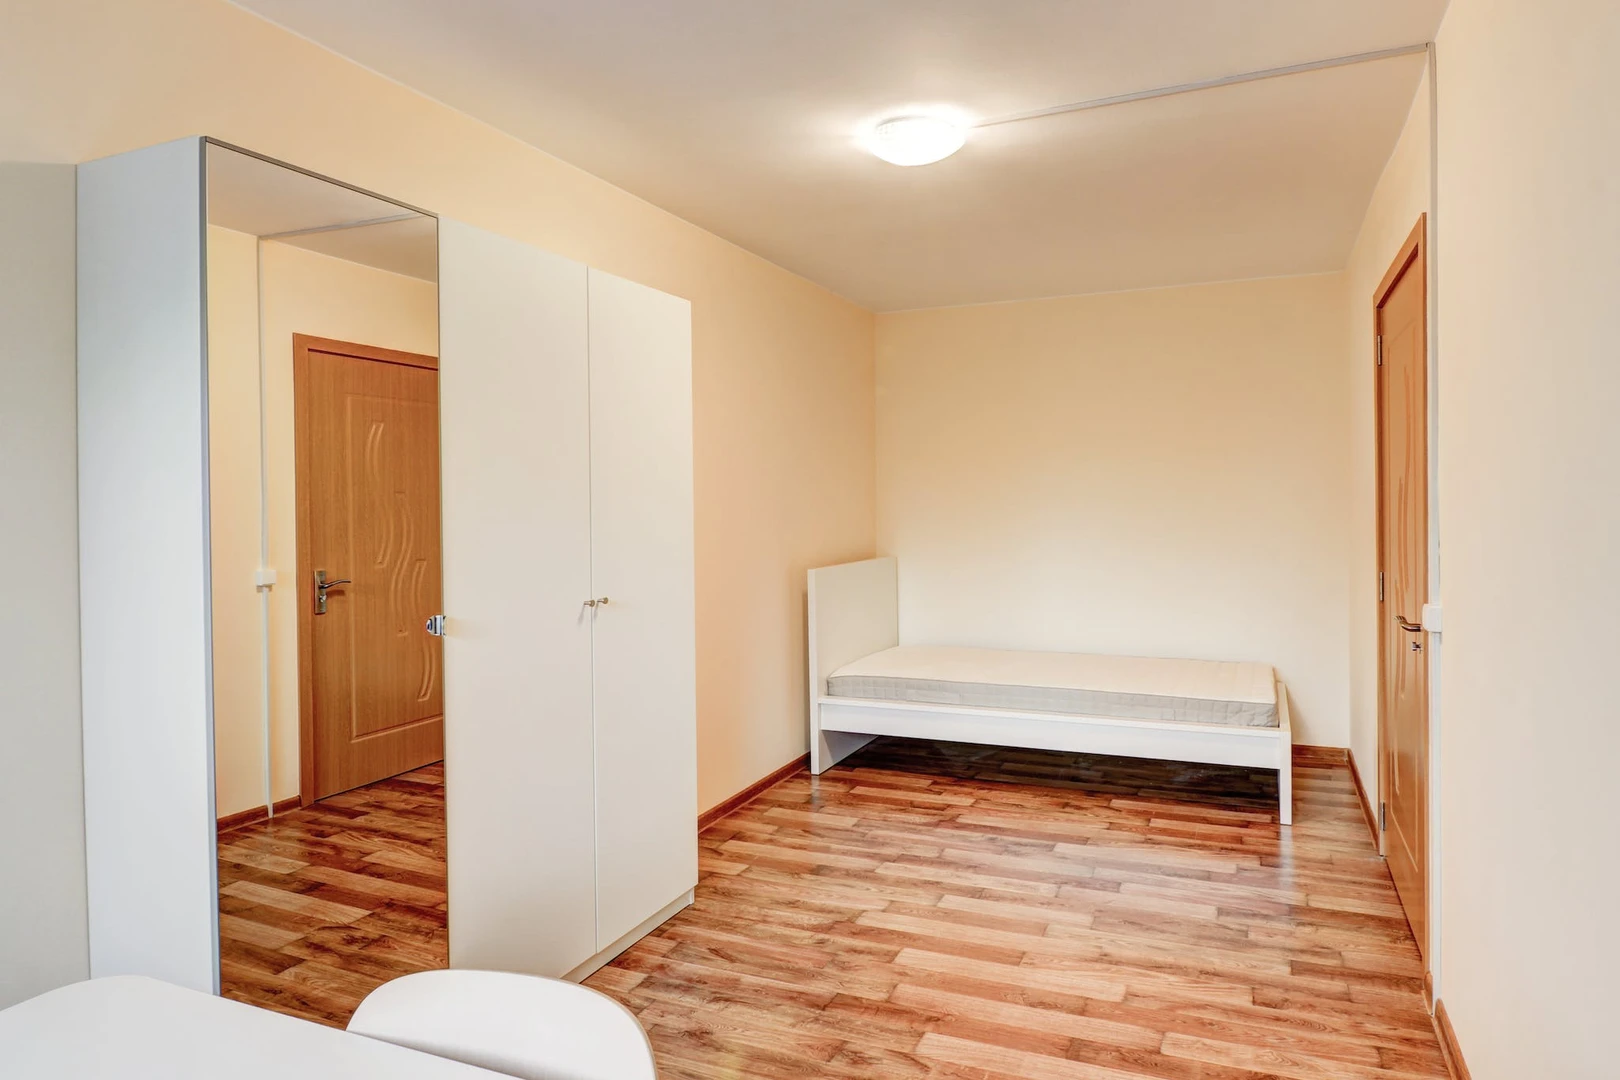 Monatliche Vermietung von Zimmern in Wilna